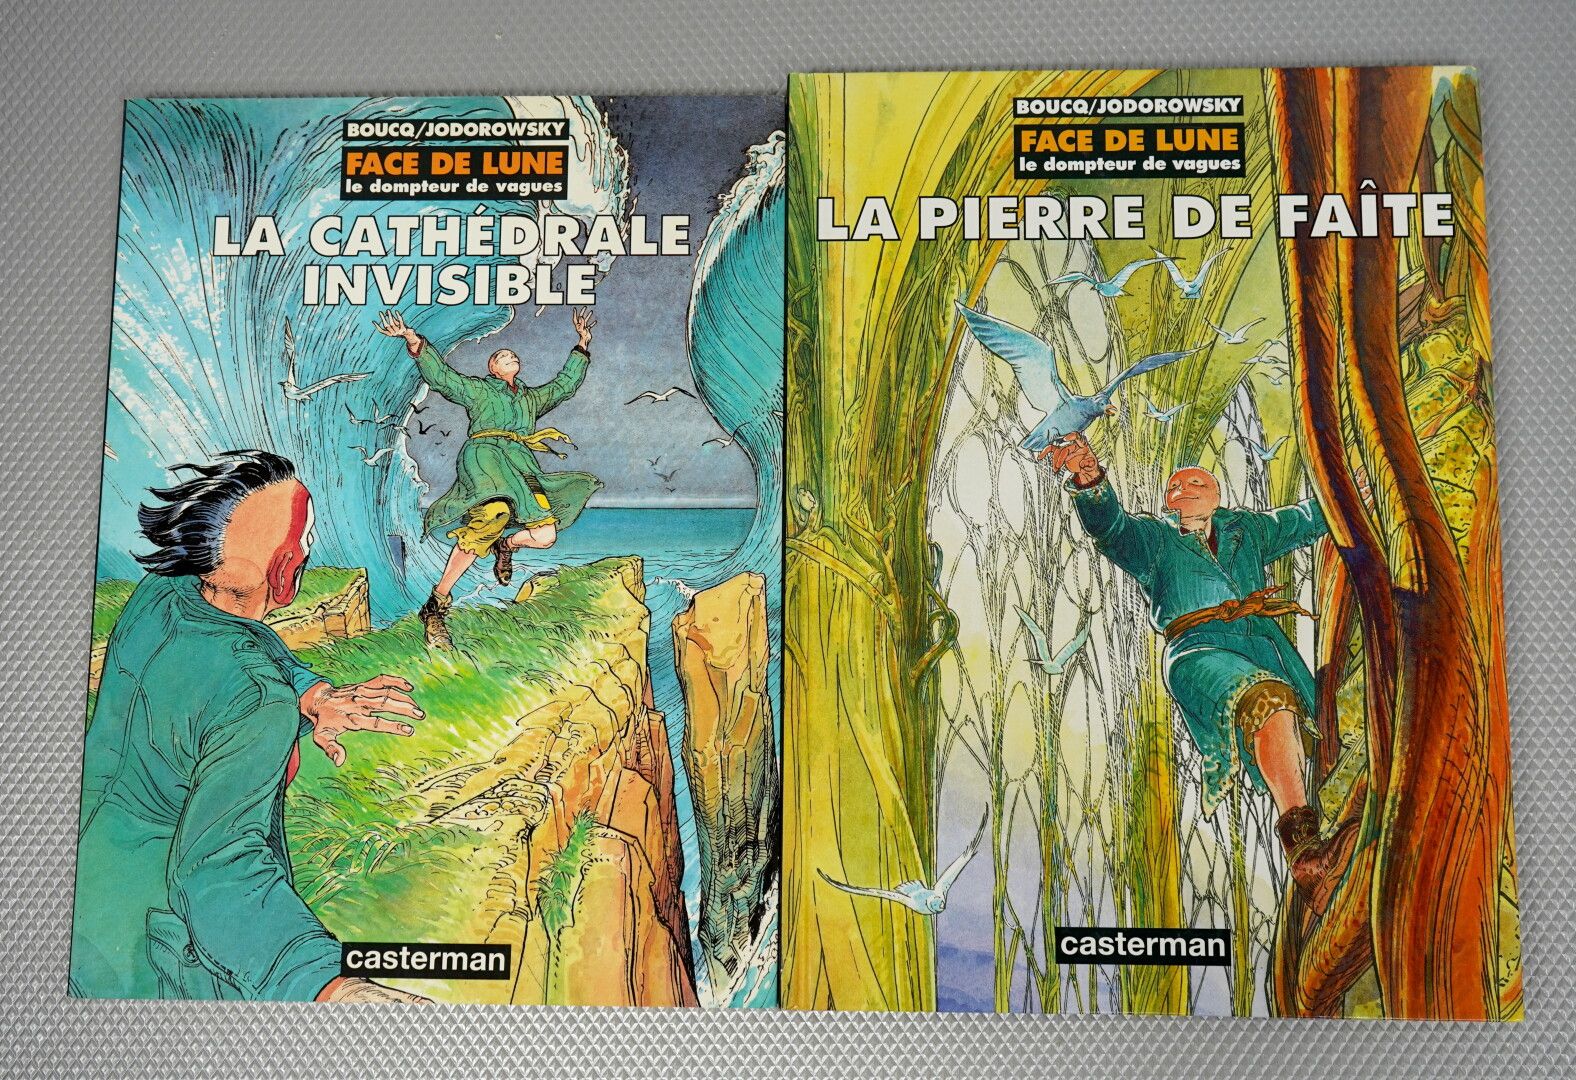 Null Die Abenteuer von Jérôme Moucherot (BOUCQ) Bände 1 bis 4



Face de Lune (B&hellip;